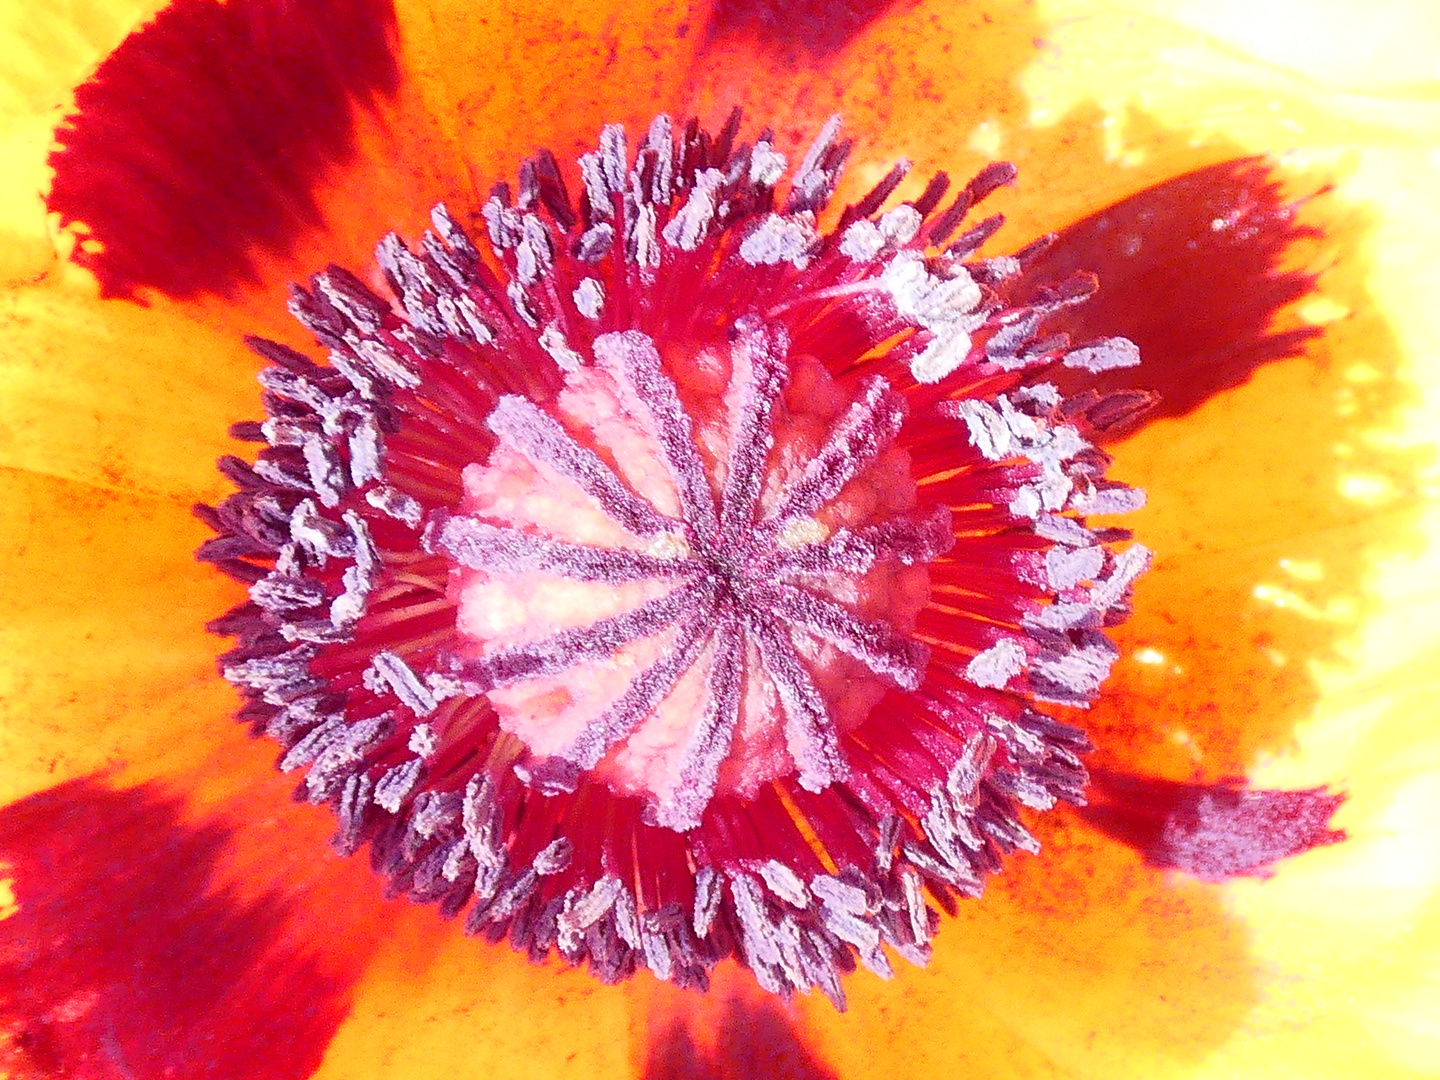 inside a poppy bloom